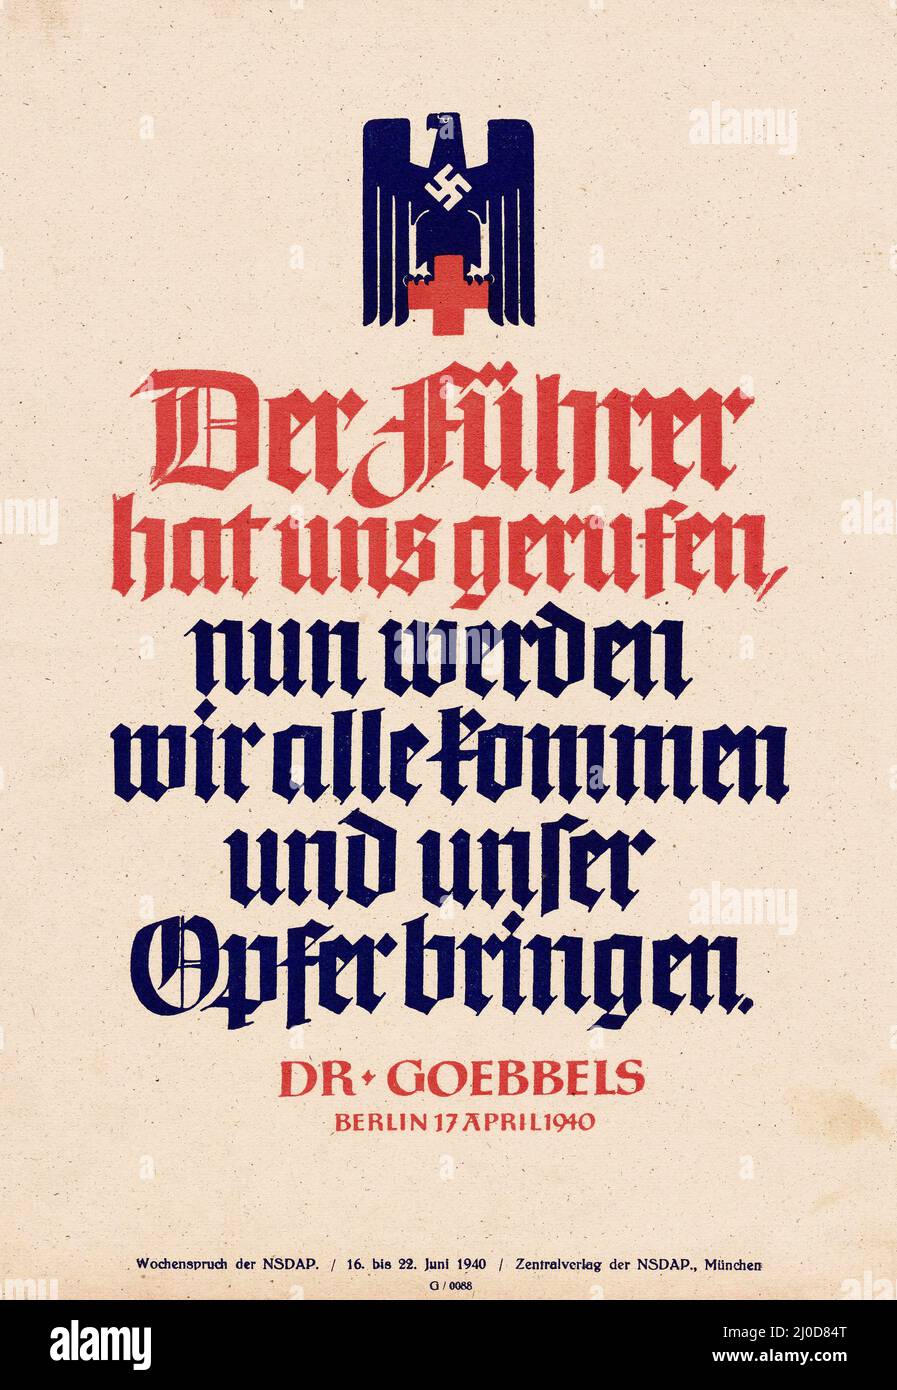 Deutsche Nazi-Propaganda - 'der Führer hat uns gerufen; jetzt werden wir alle kommen und unser Opfer bringen. Dr. Goebbels am 17. April 1940 in Berlin.“ Stockfoto